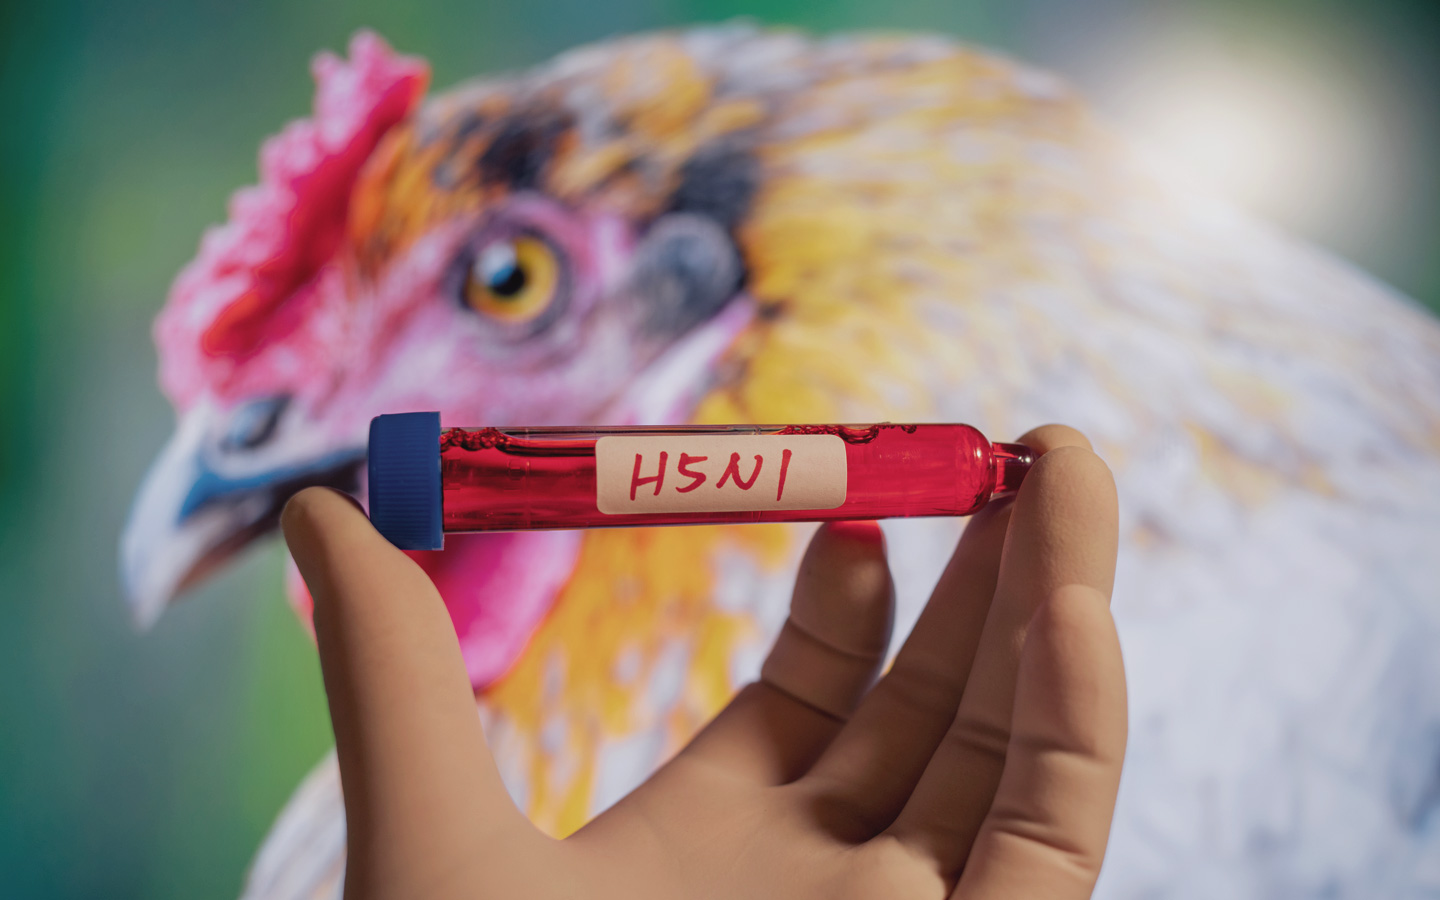 Foto: Probenröhrchen mit der Aufschrift "H5N1", im Hintergrund ein Huhn.